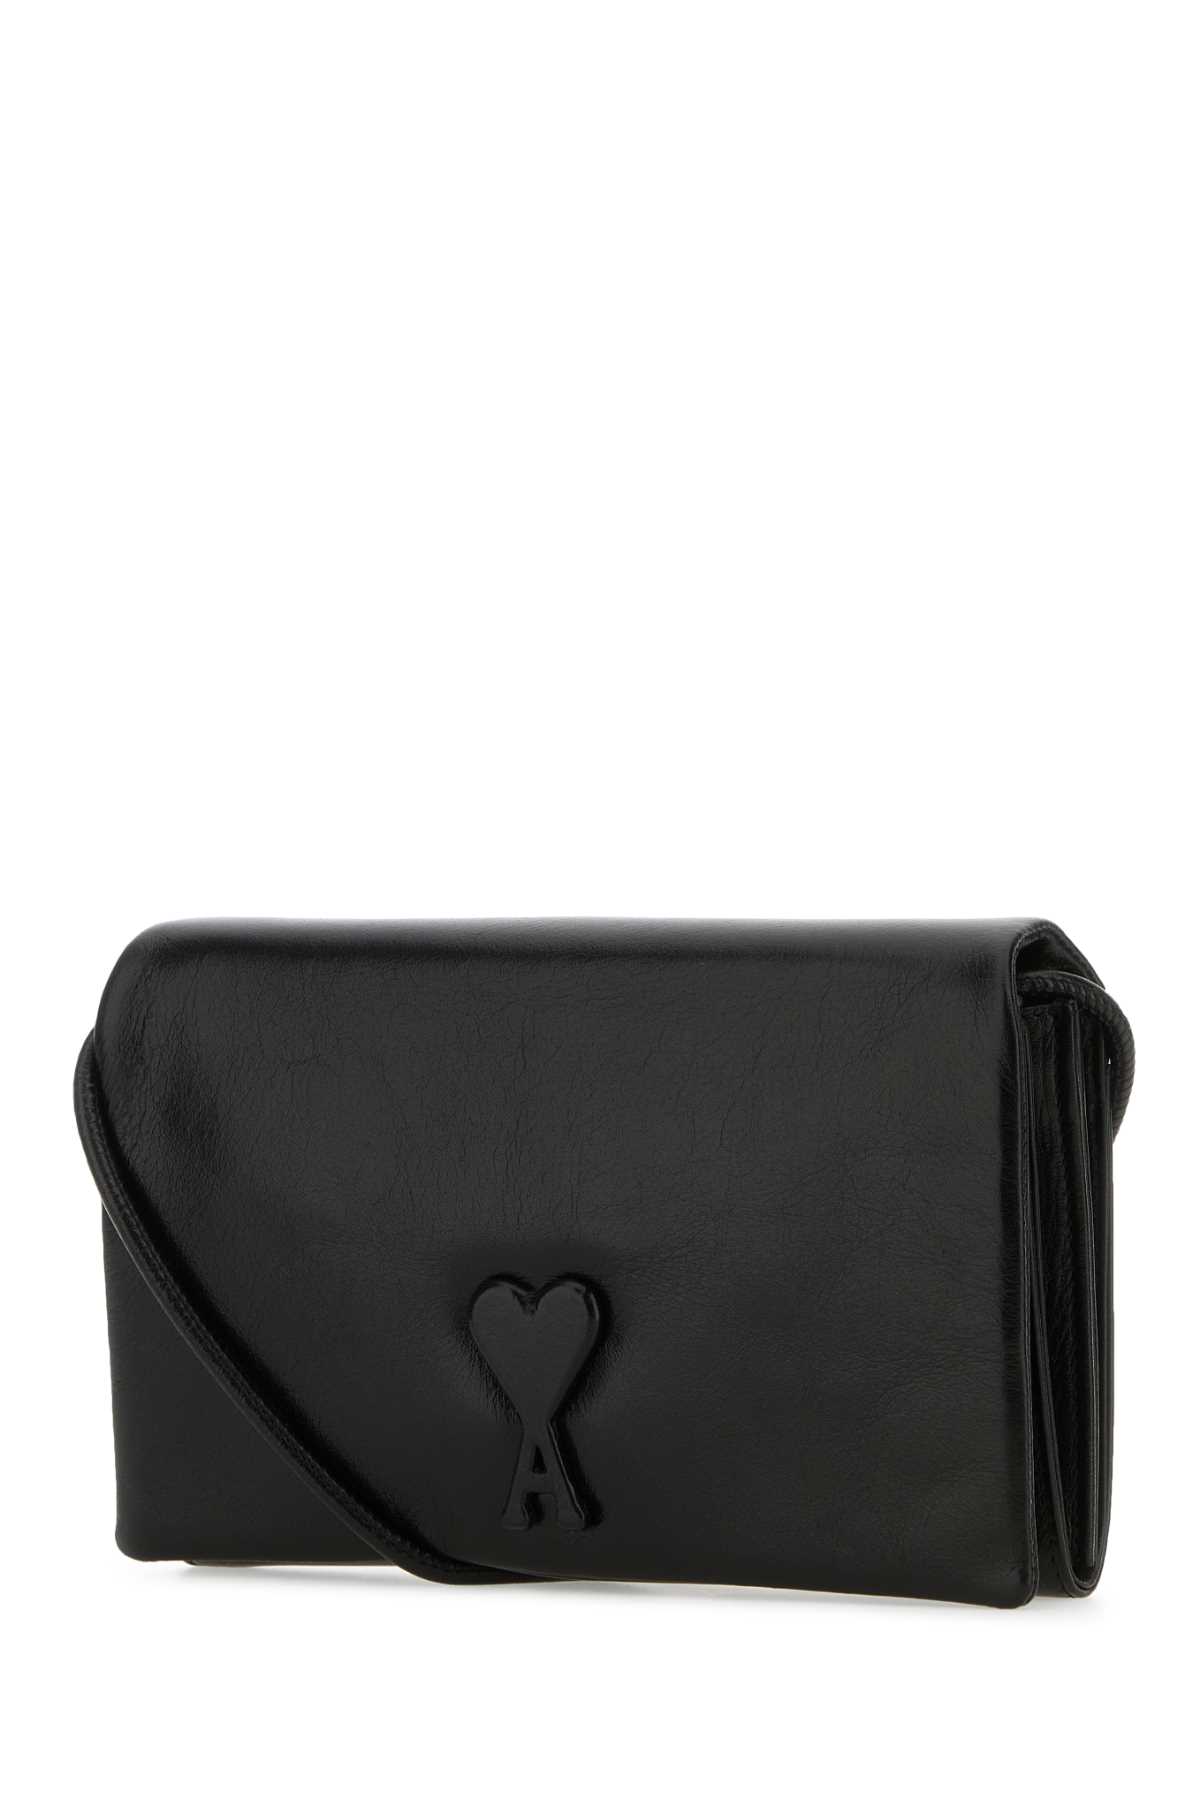 Shop Ami Alexandre Mattiussi Black Leather Voulez-vous Wallet